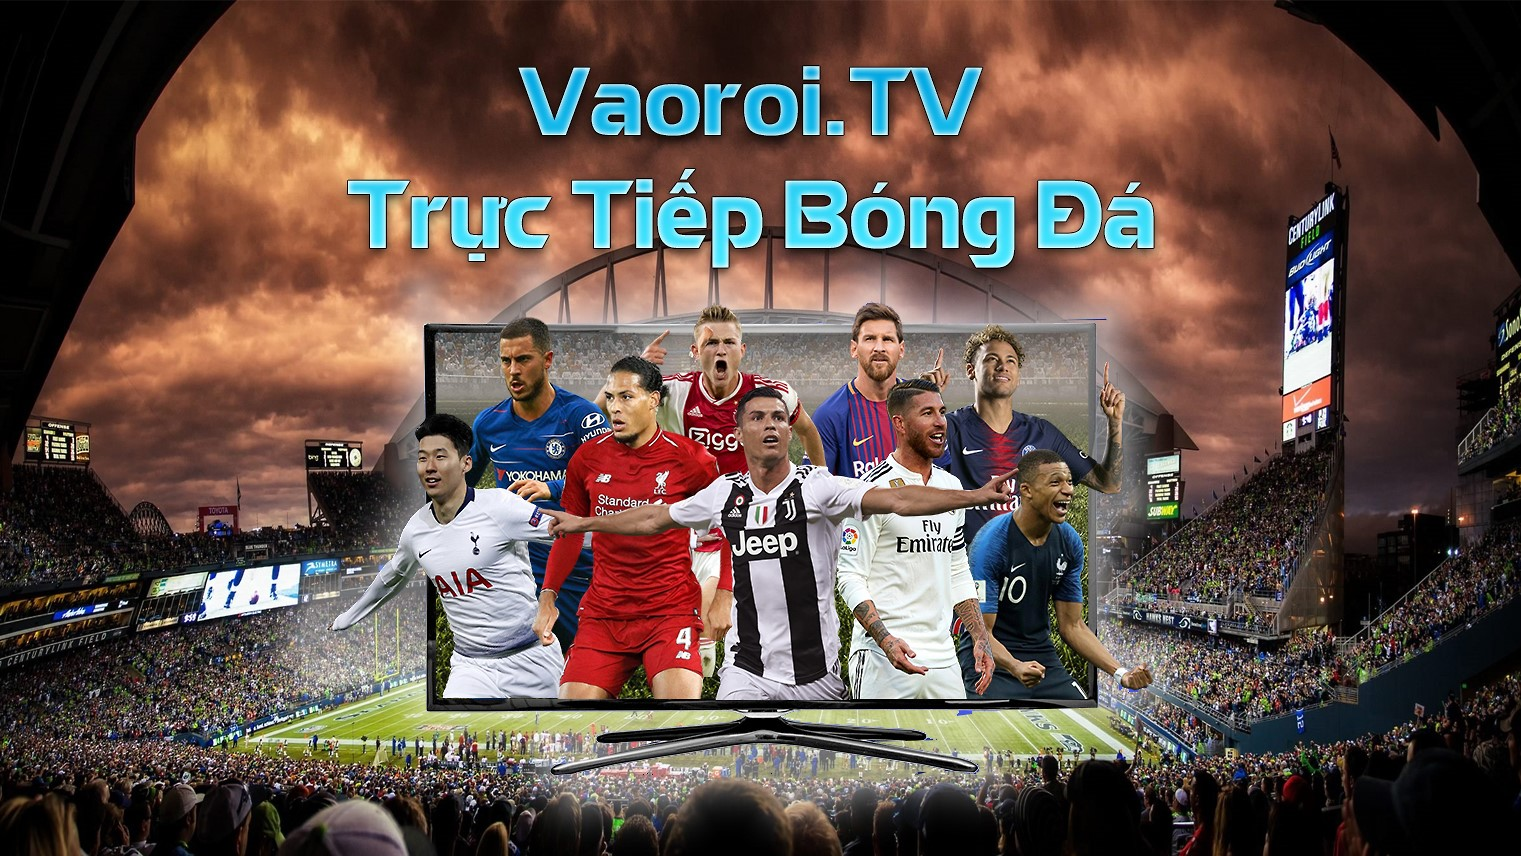 Vaoroi TV - Xem trực tuyến bóng đá mượt mà mọi lúc mọi nơi